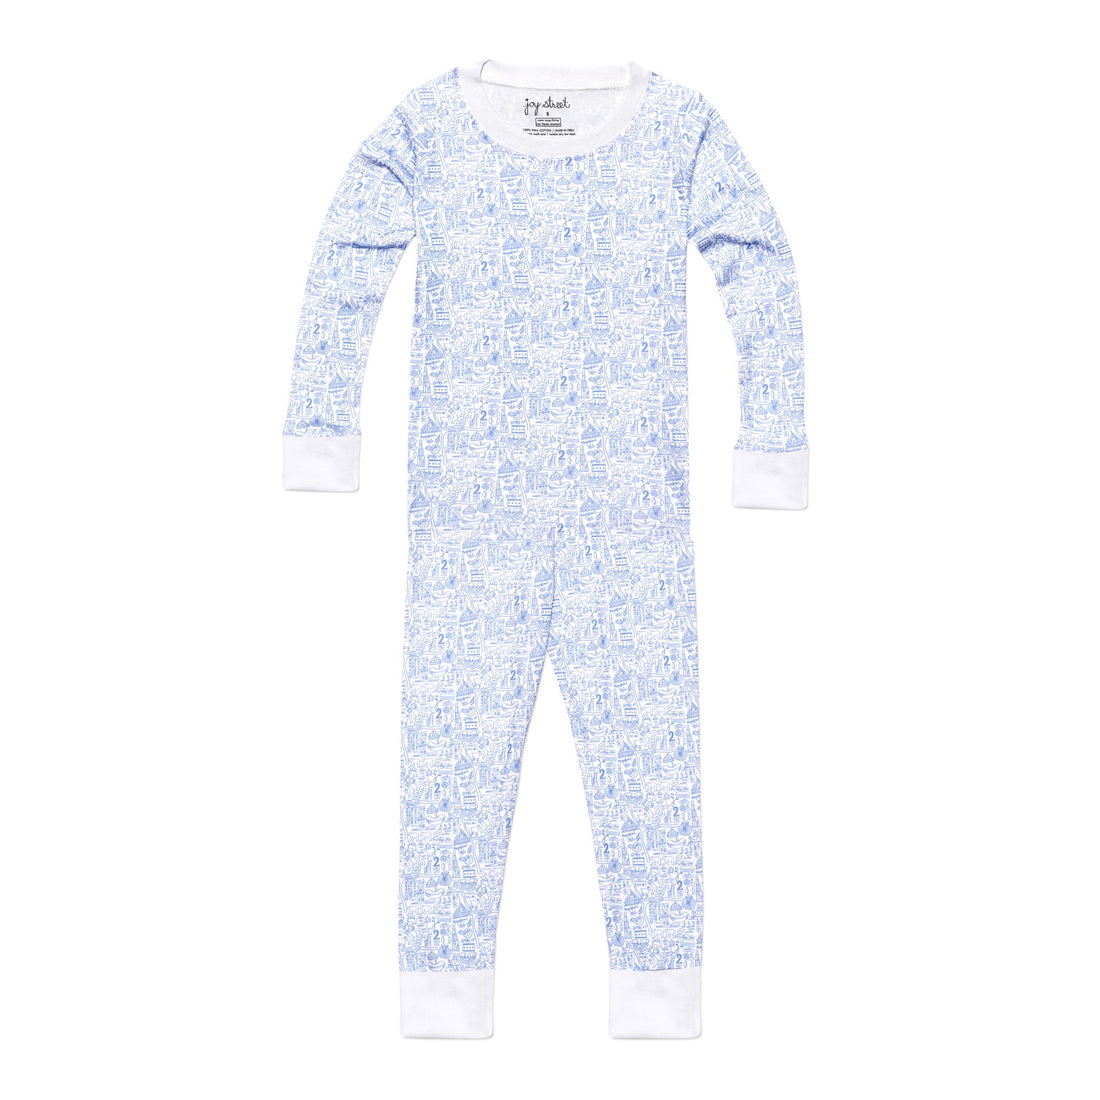 Joy Street Kids Chicago print pajamas, blue